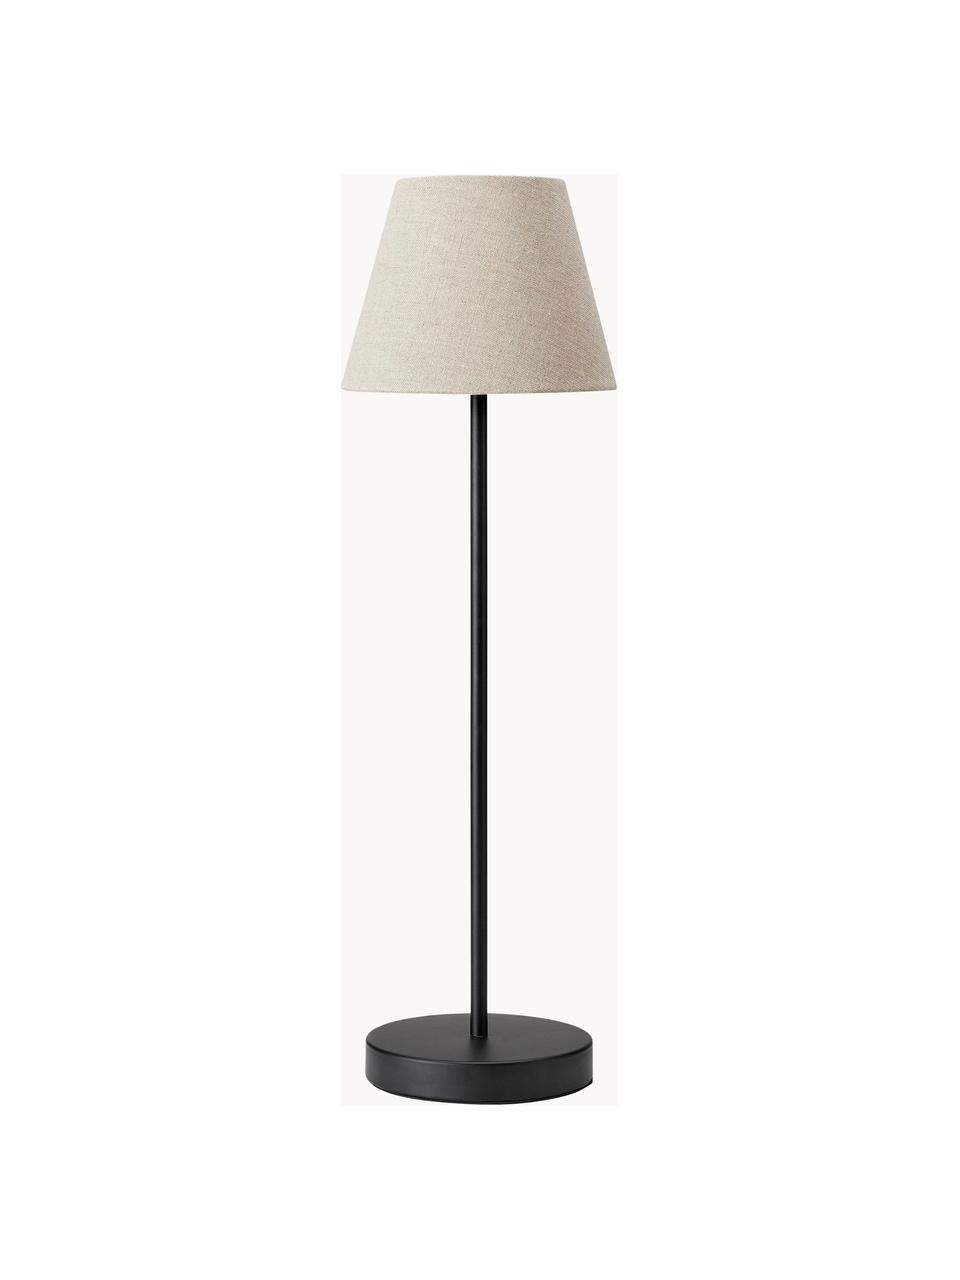 Grosse Tischlampe Cozy, Lampenschirm: Textil, Beige, Schwarz, Ø 18 x H 63 cm